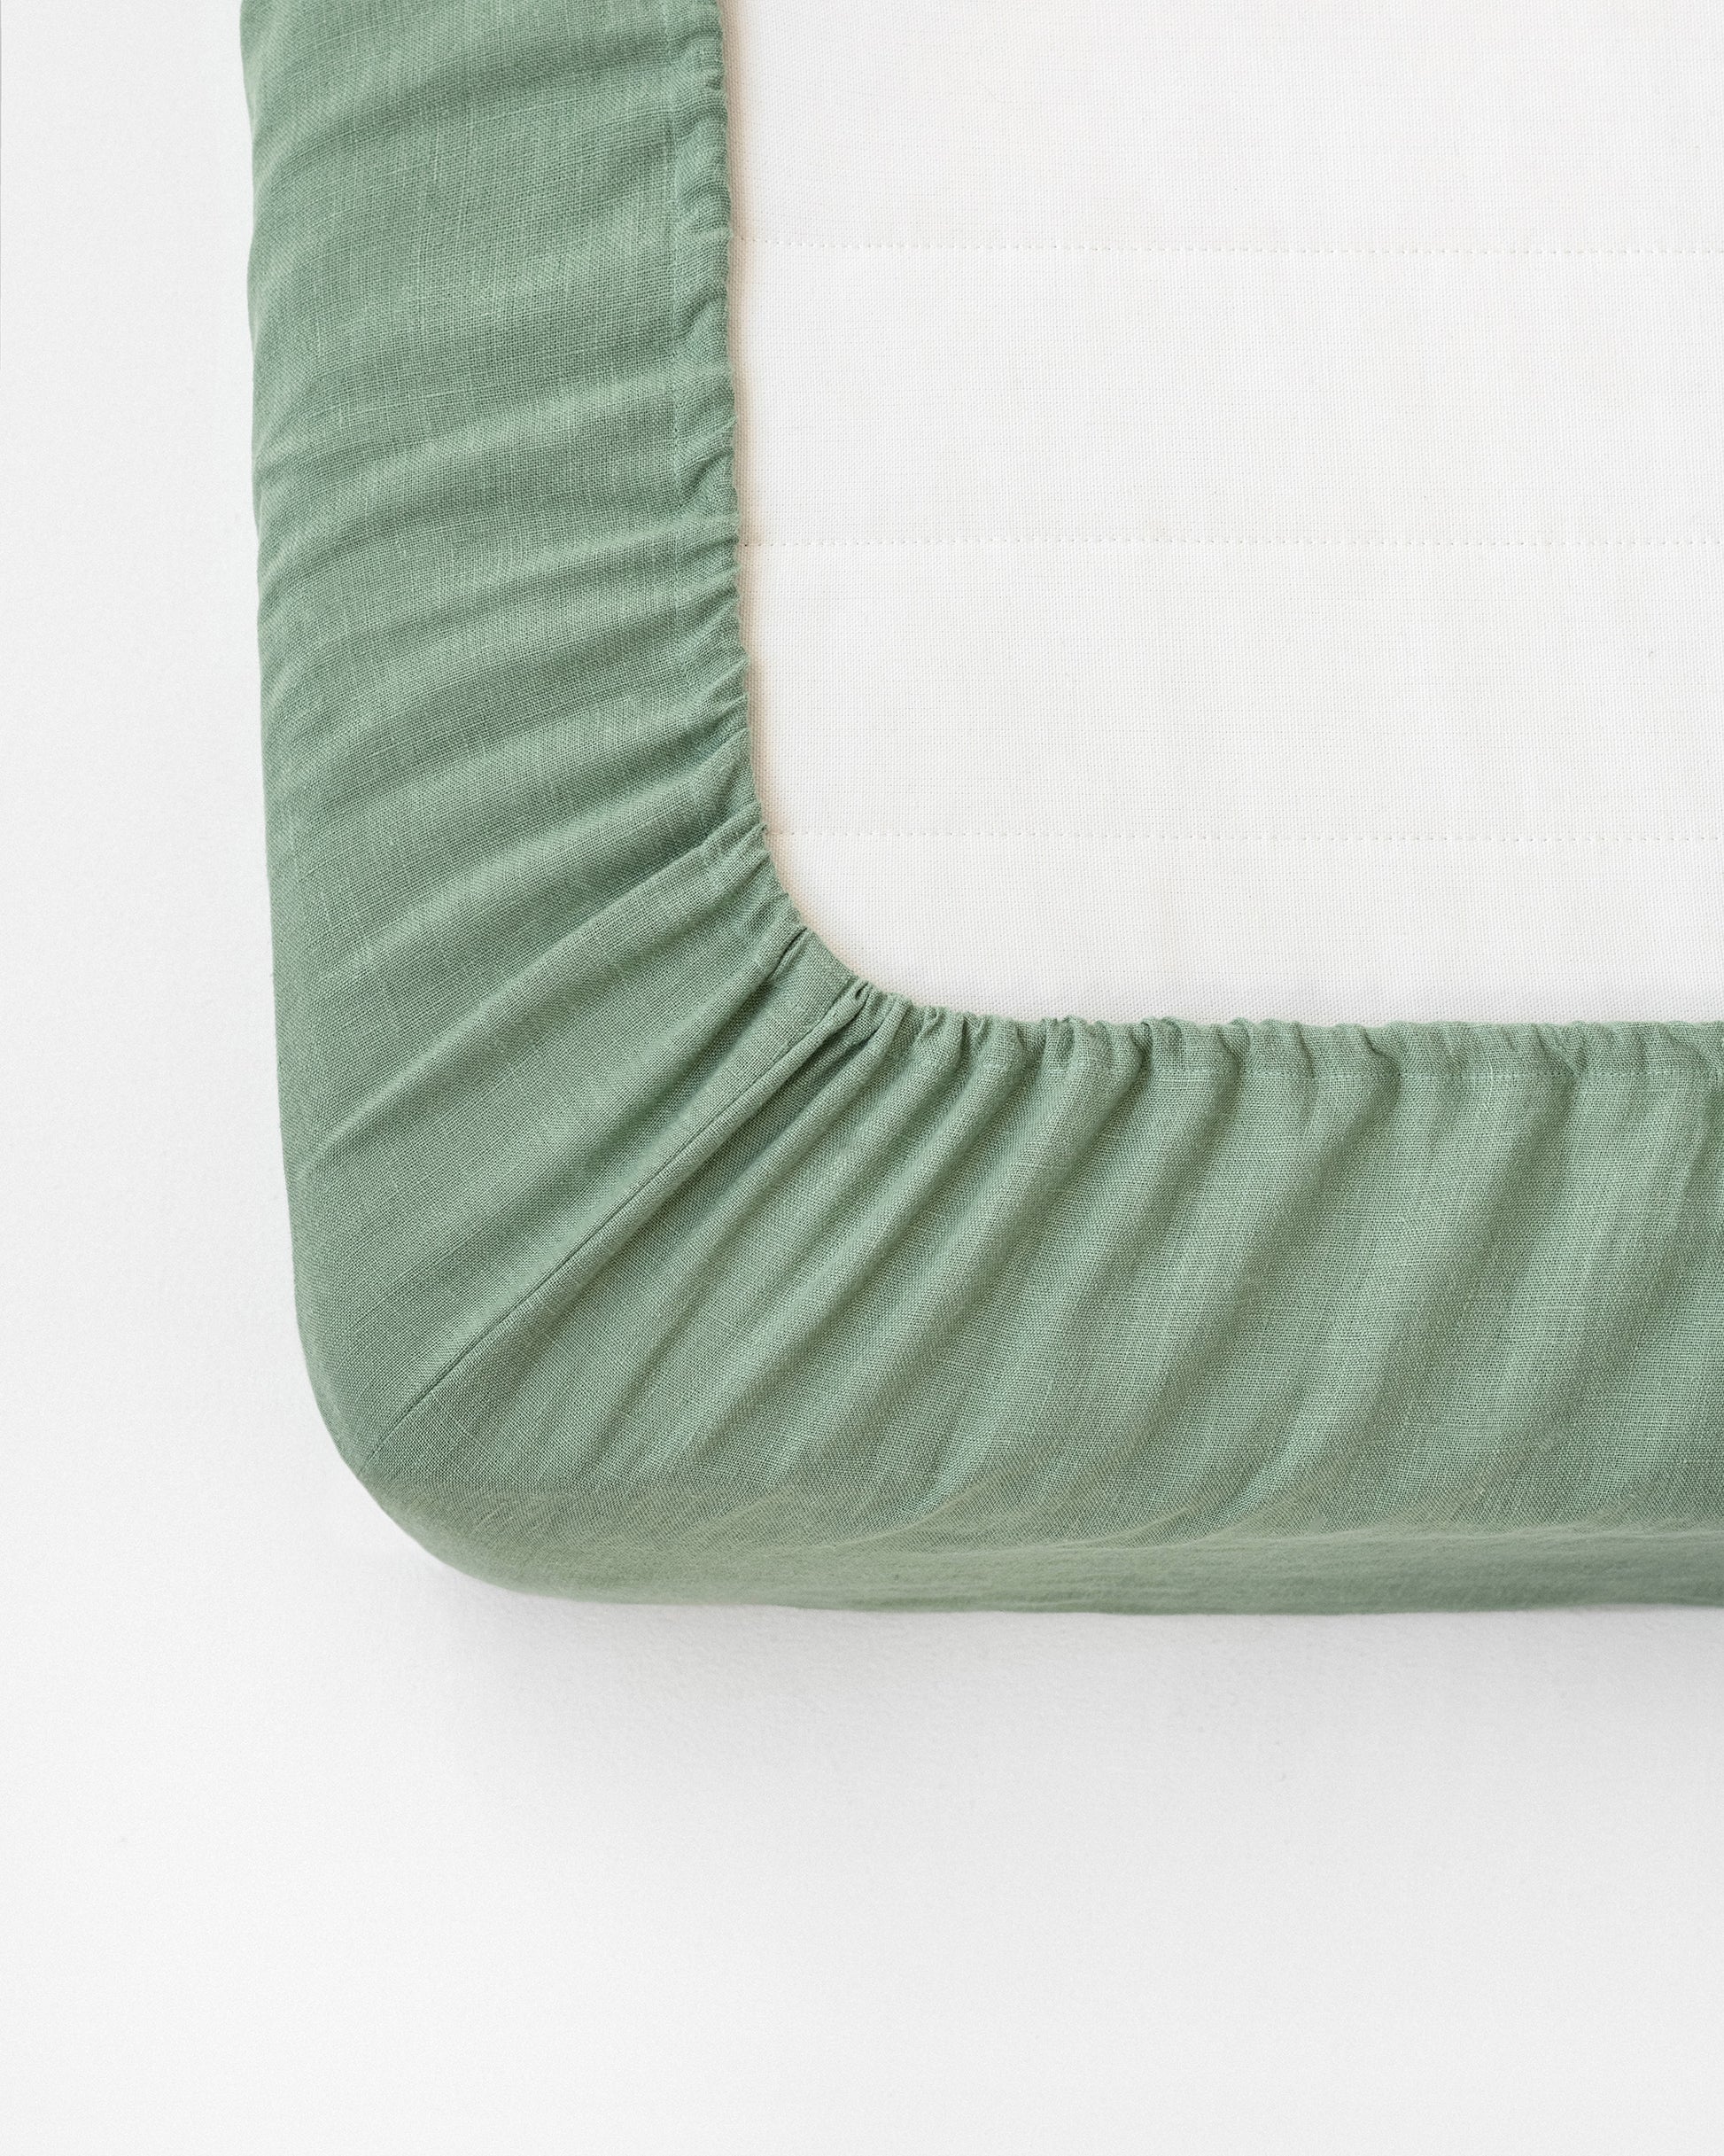 Matcha green linen fitted sheet - MagicLinen